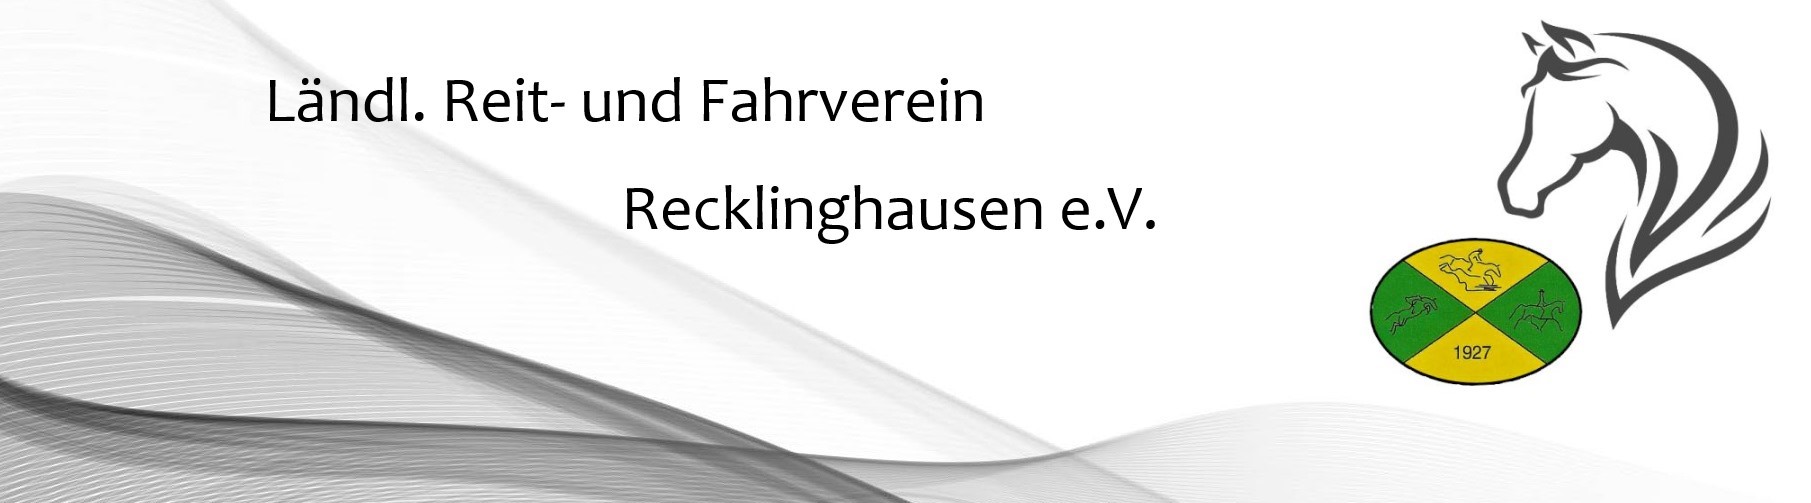 Ländlicher Reit- und Fahrverein Recklinghausen e.V.